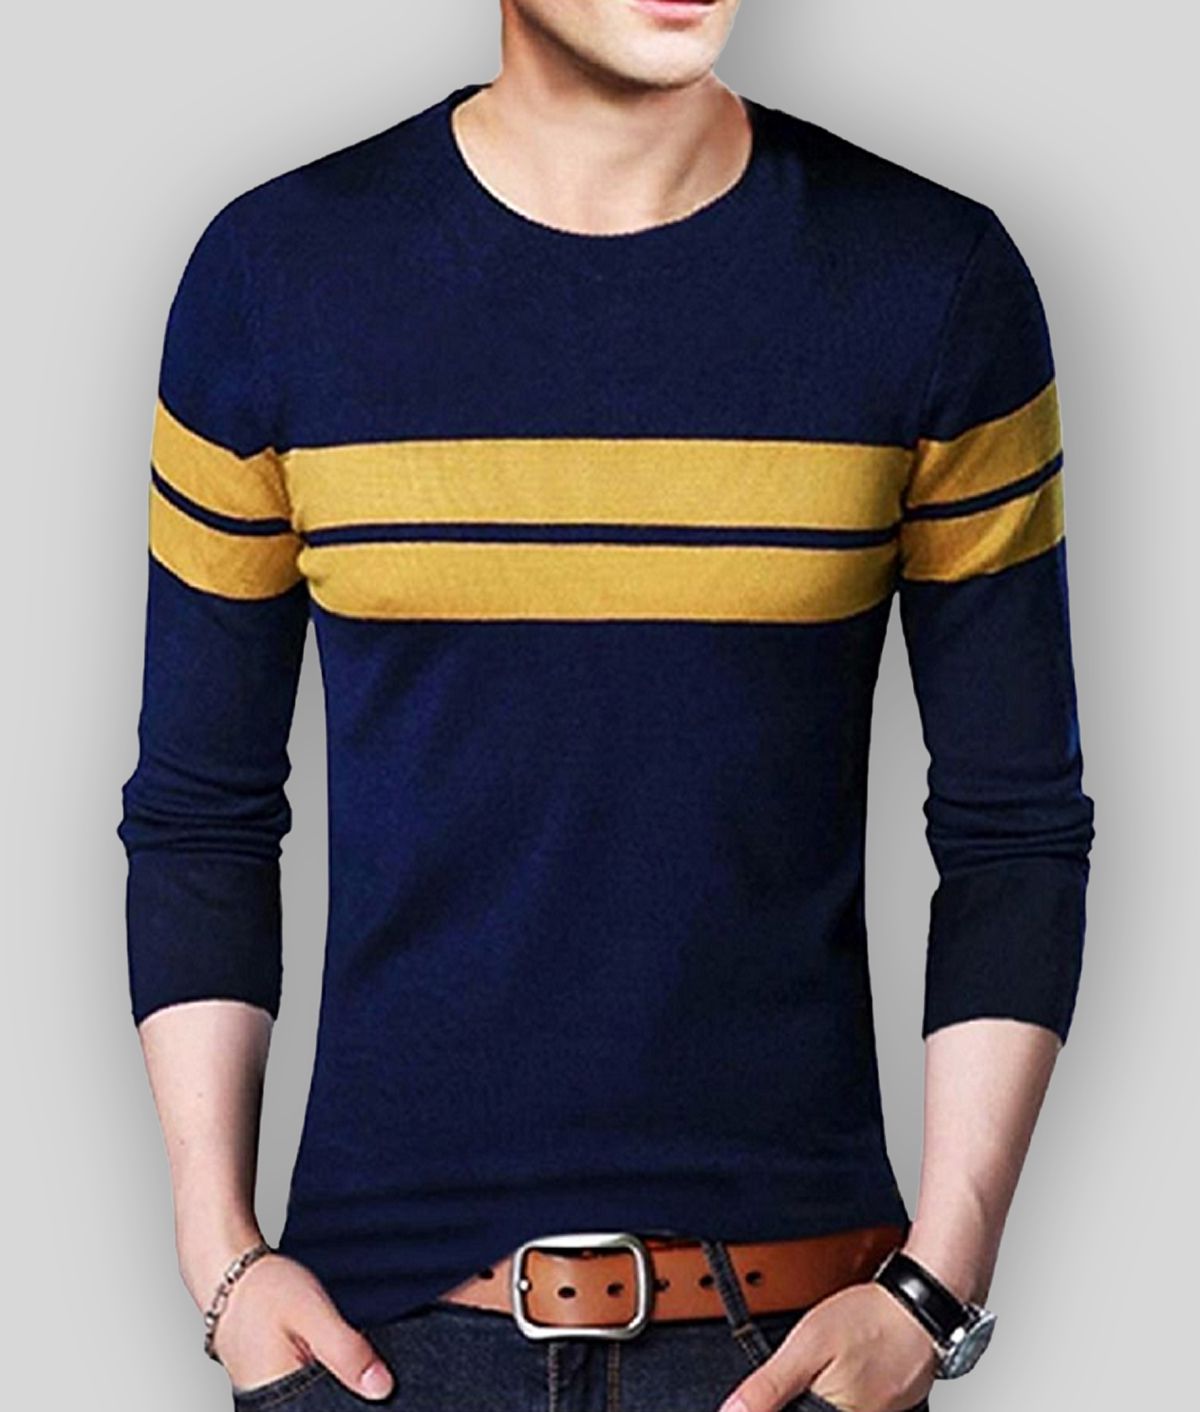     			Leotude - Navy Blue Cotton Blend Regular Fit Men's T-Shirt ( Pack of 1 )